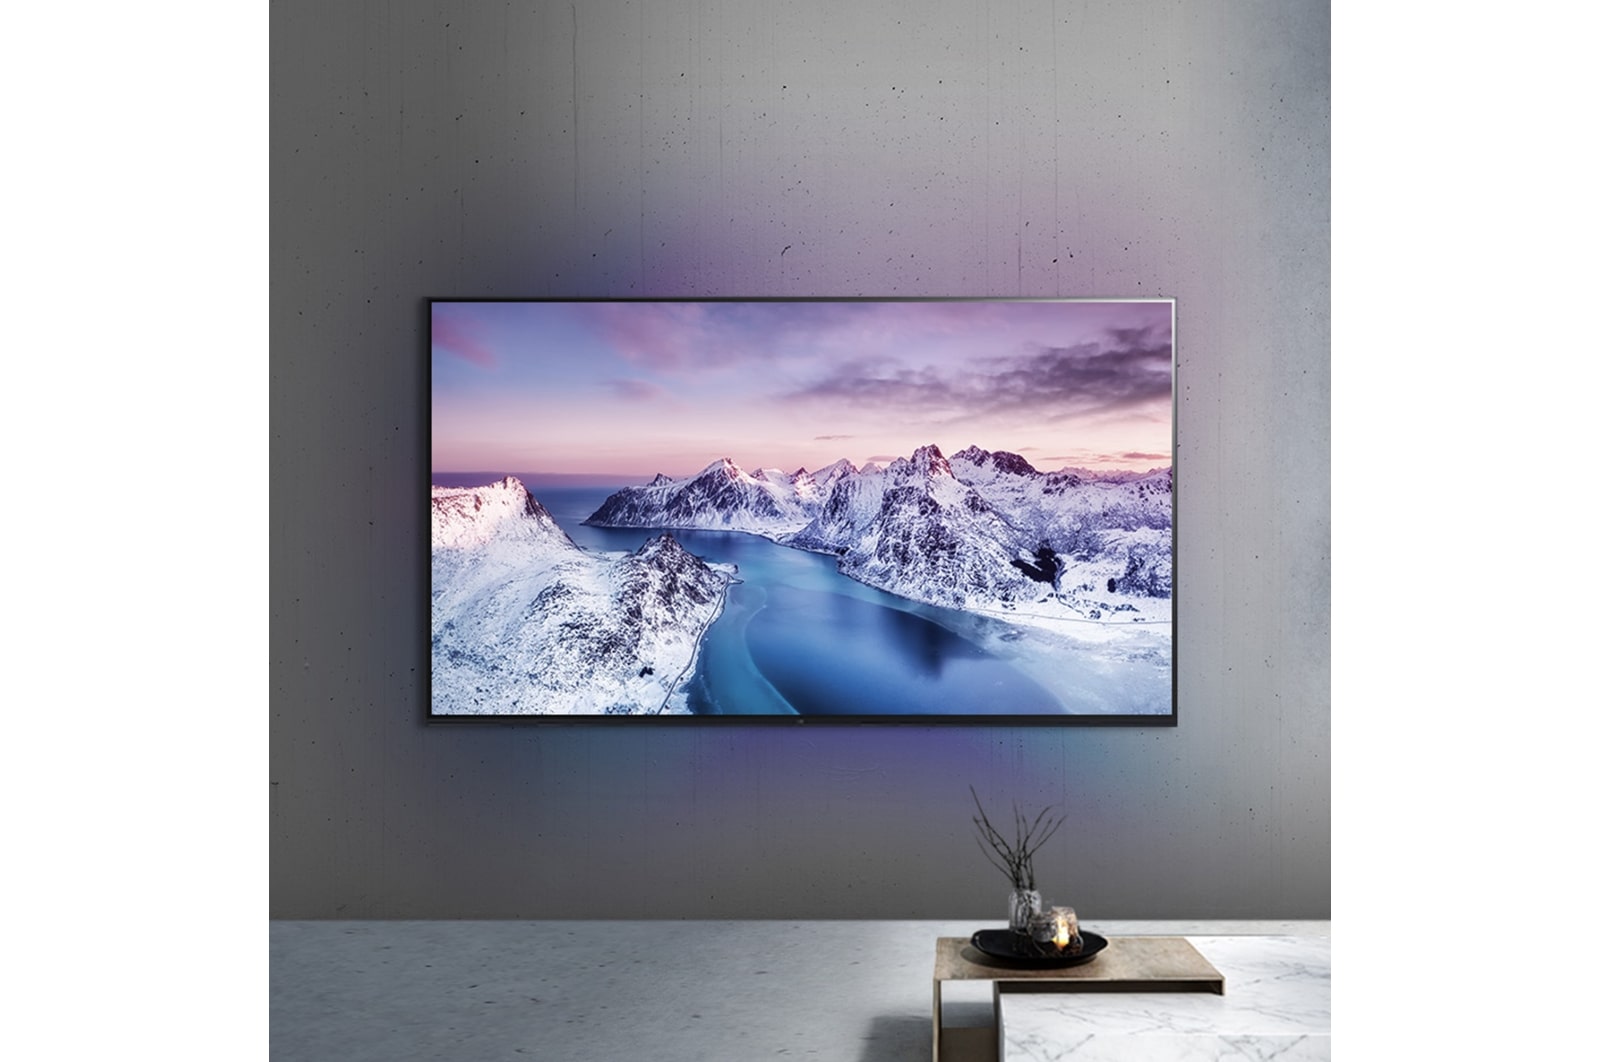 TV LG 55UR80006LJ (LED - 55'' - 140 cm - 4K Ultra HD - Smart TV